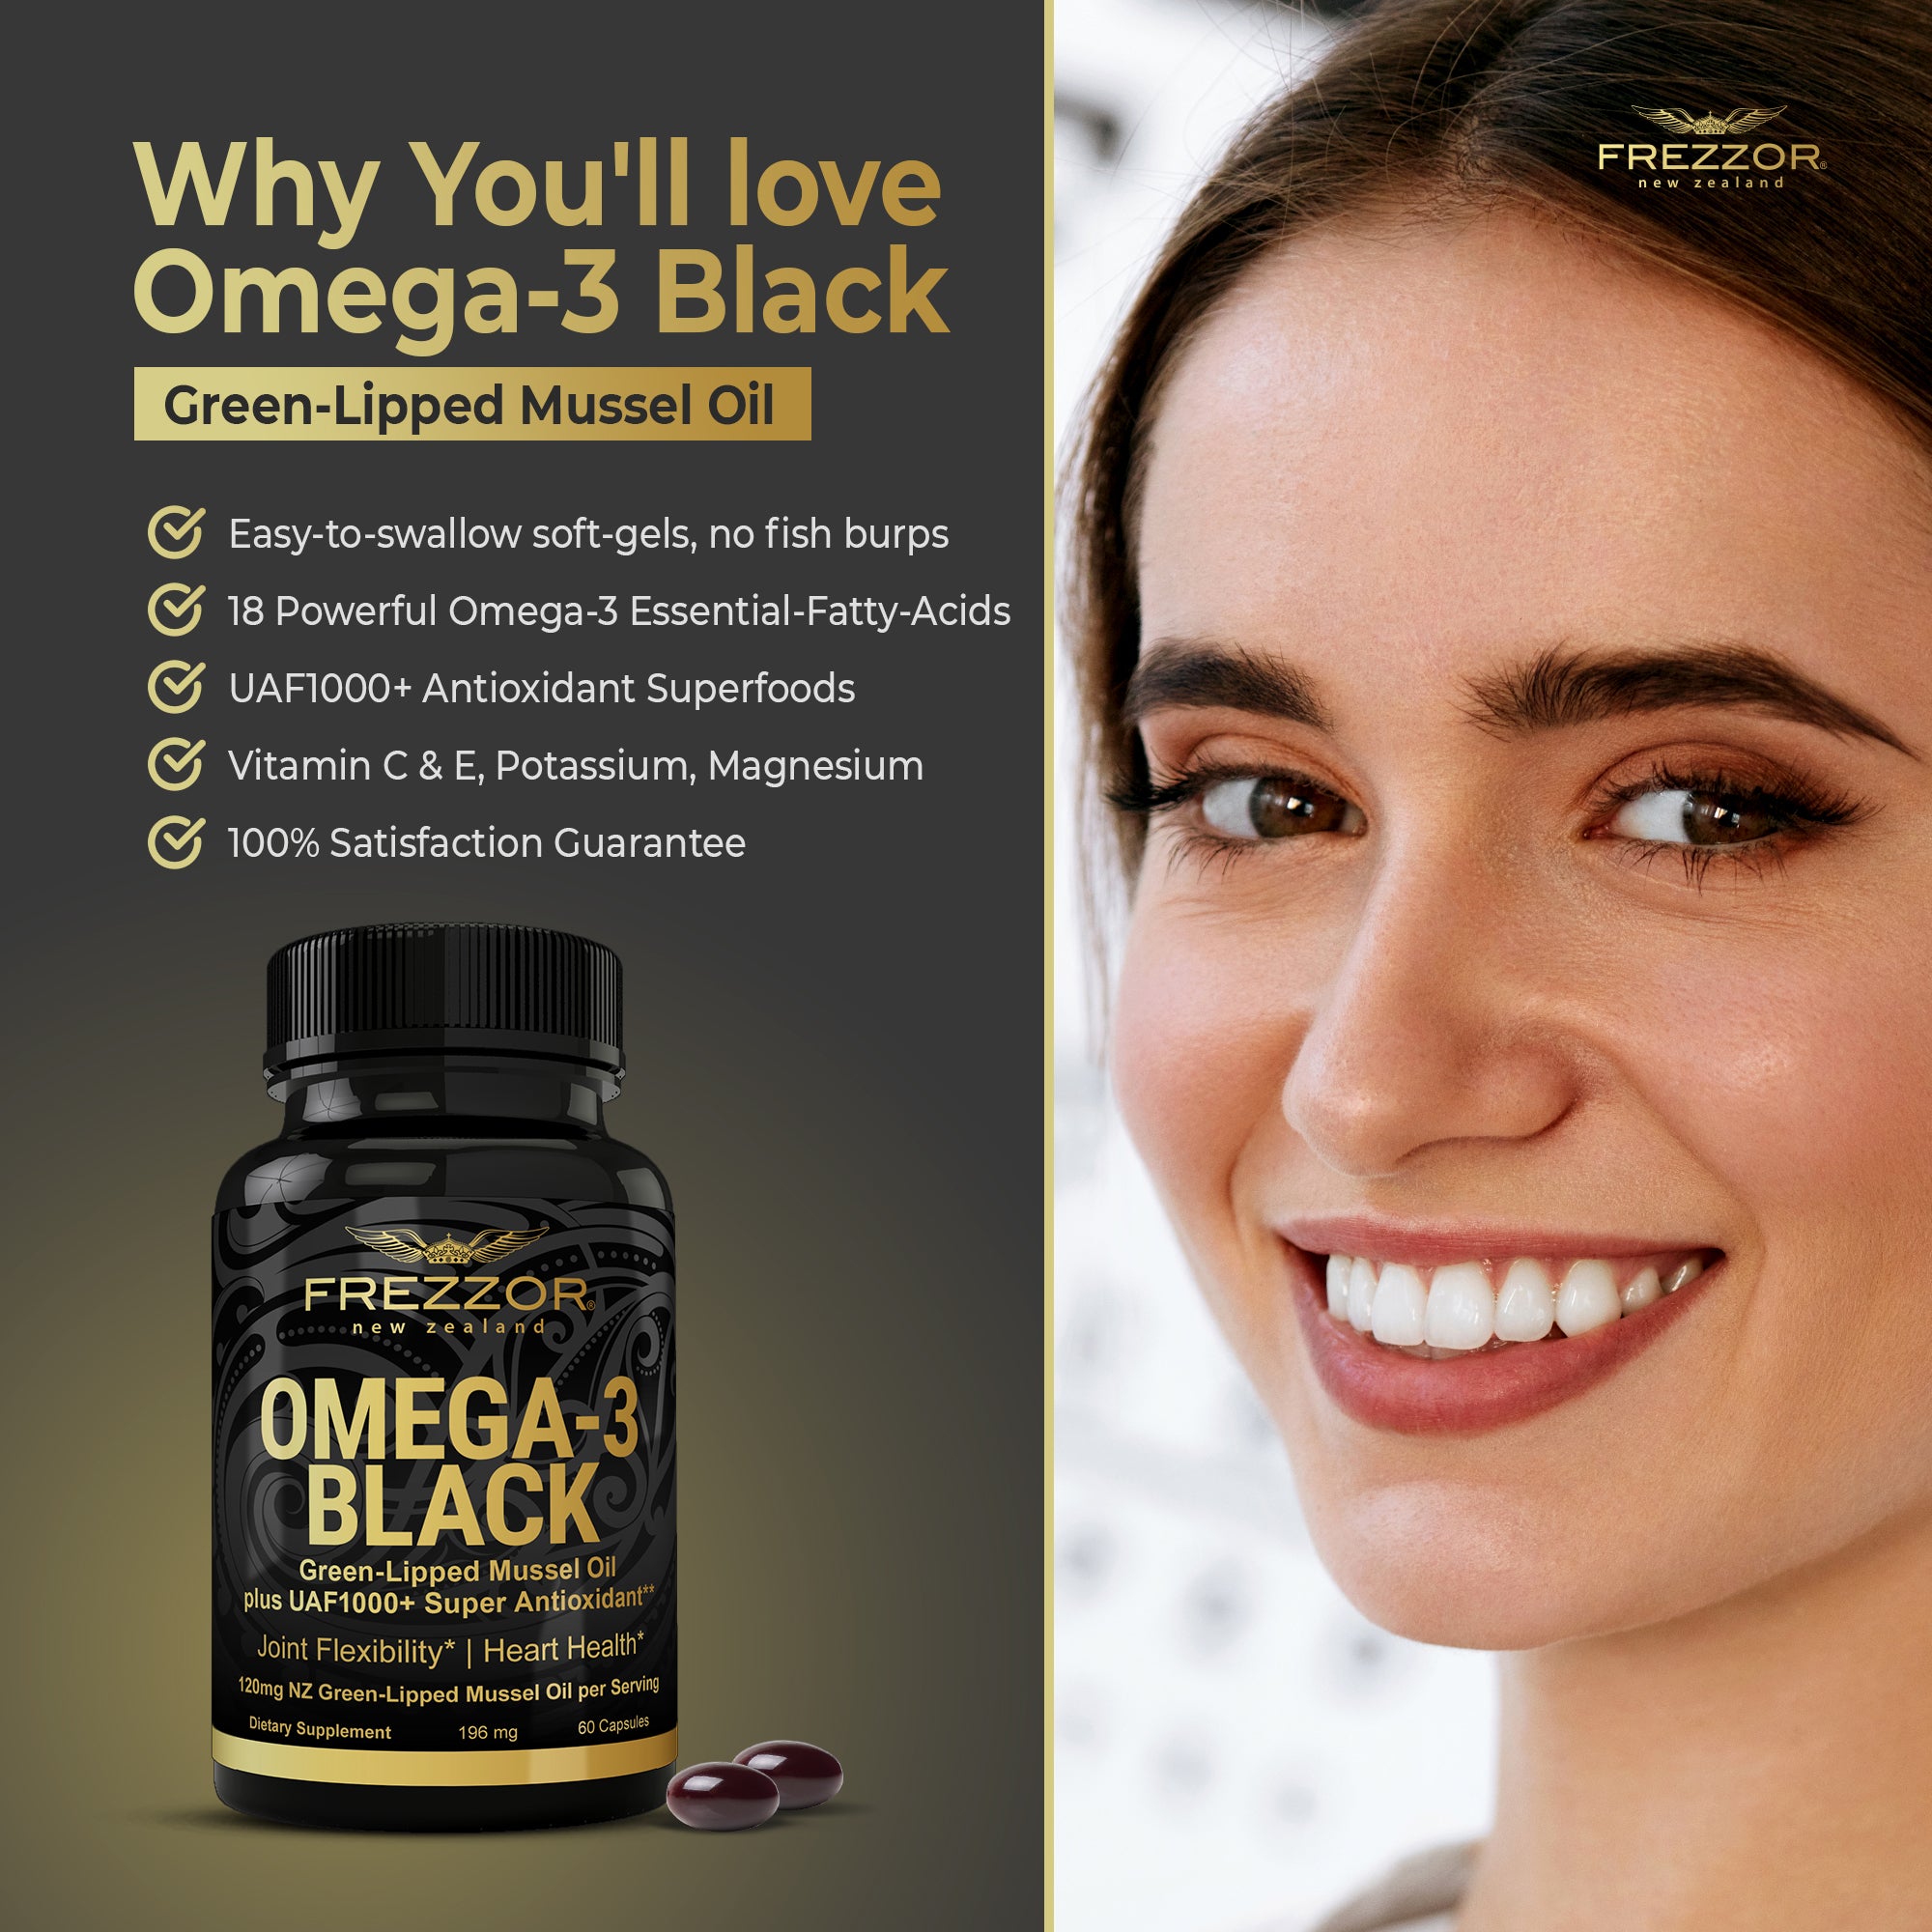 FREZZOR Omega-3 Black